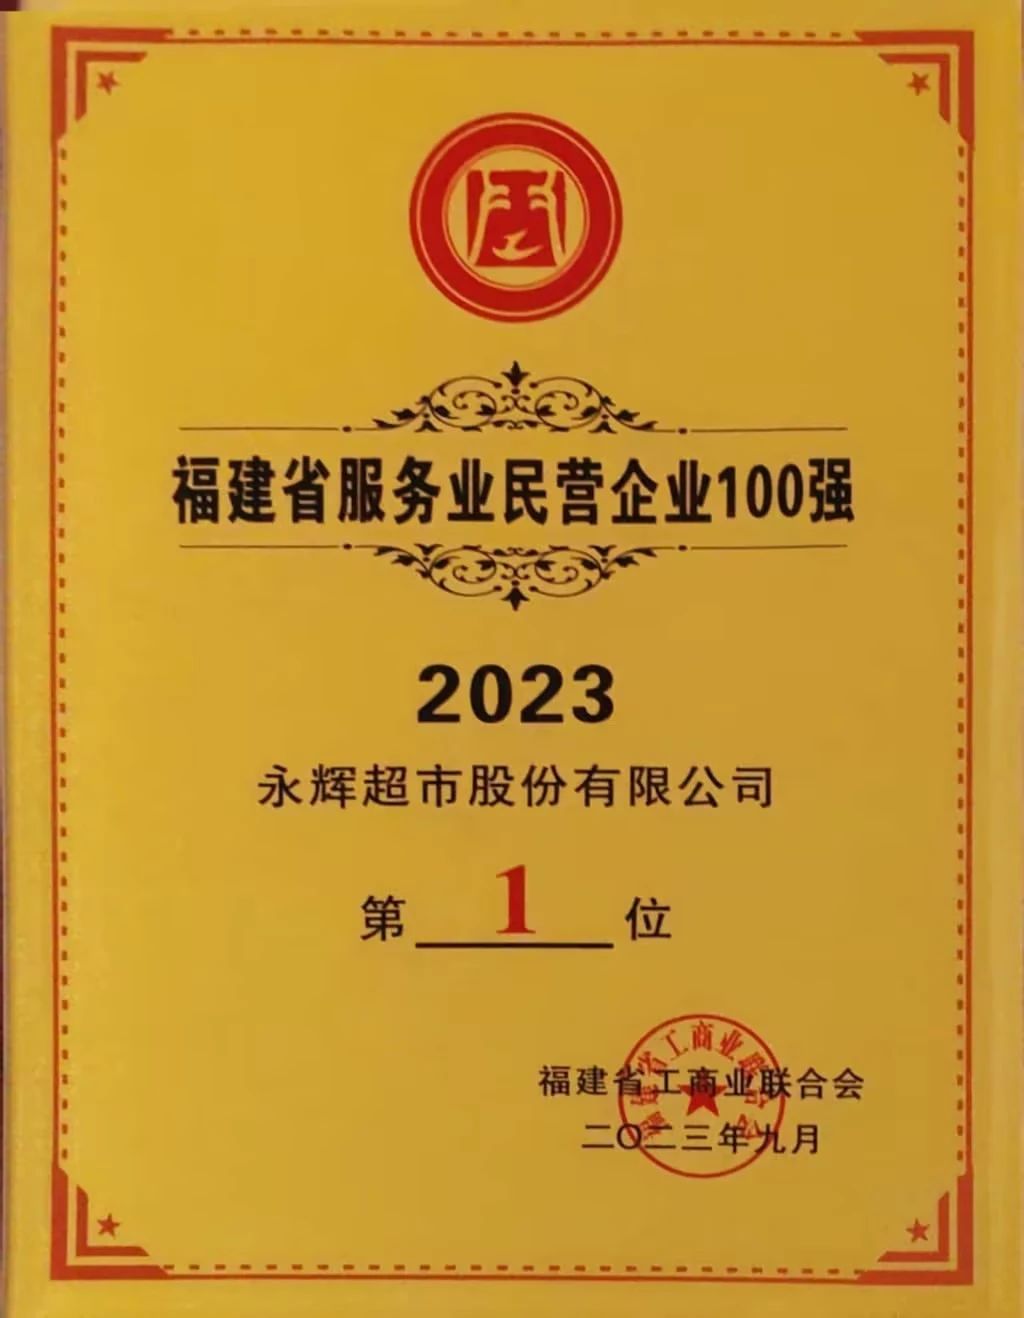 永辉超市再次入选2023福建省民营企业100强